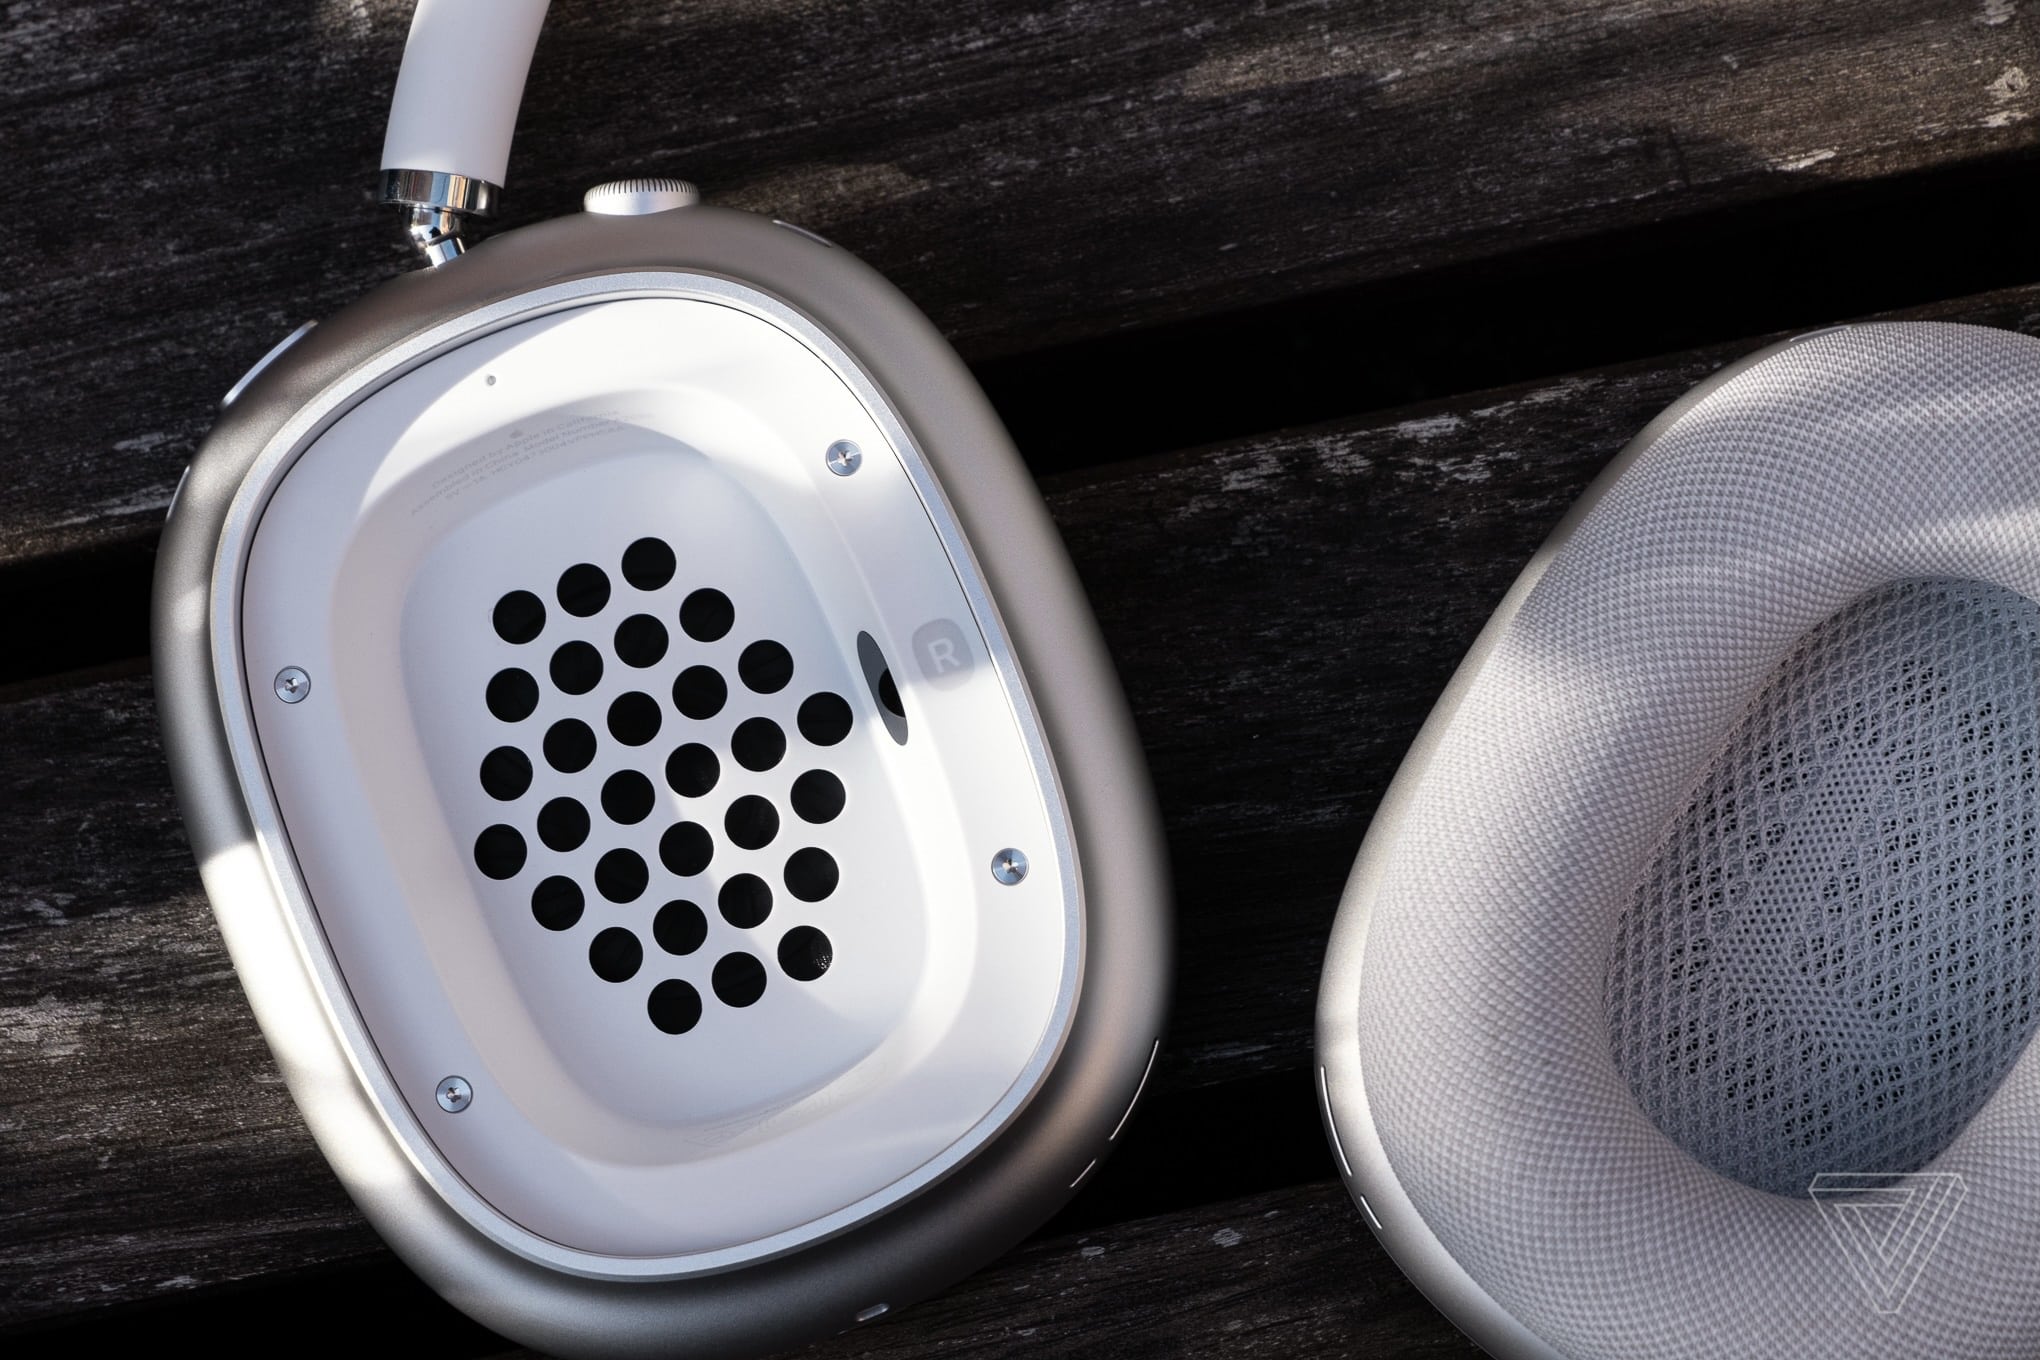 Đánh giá tai nghe AirPods Max: Âm thanh sang trọng đi kèm với giá bán sang chảnh